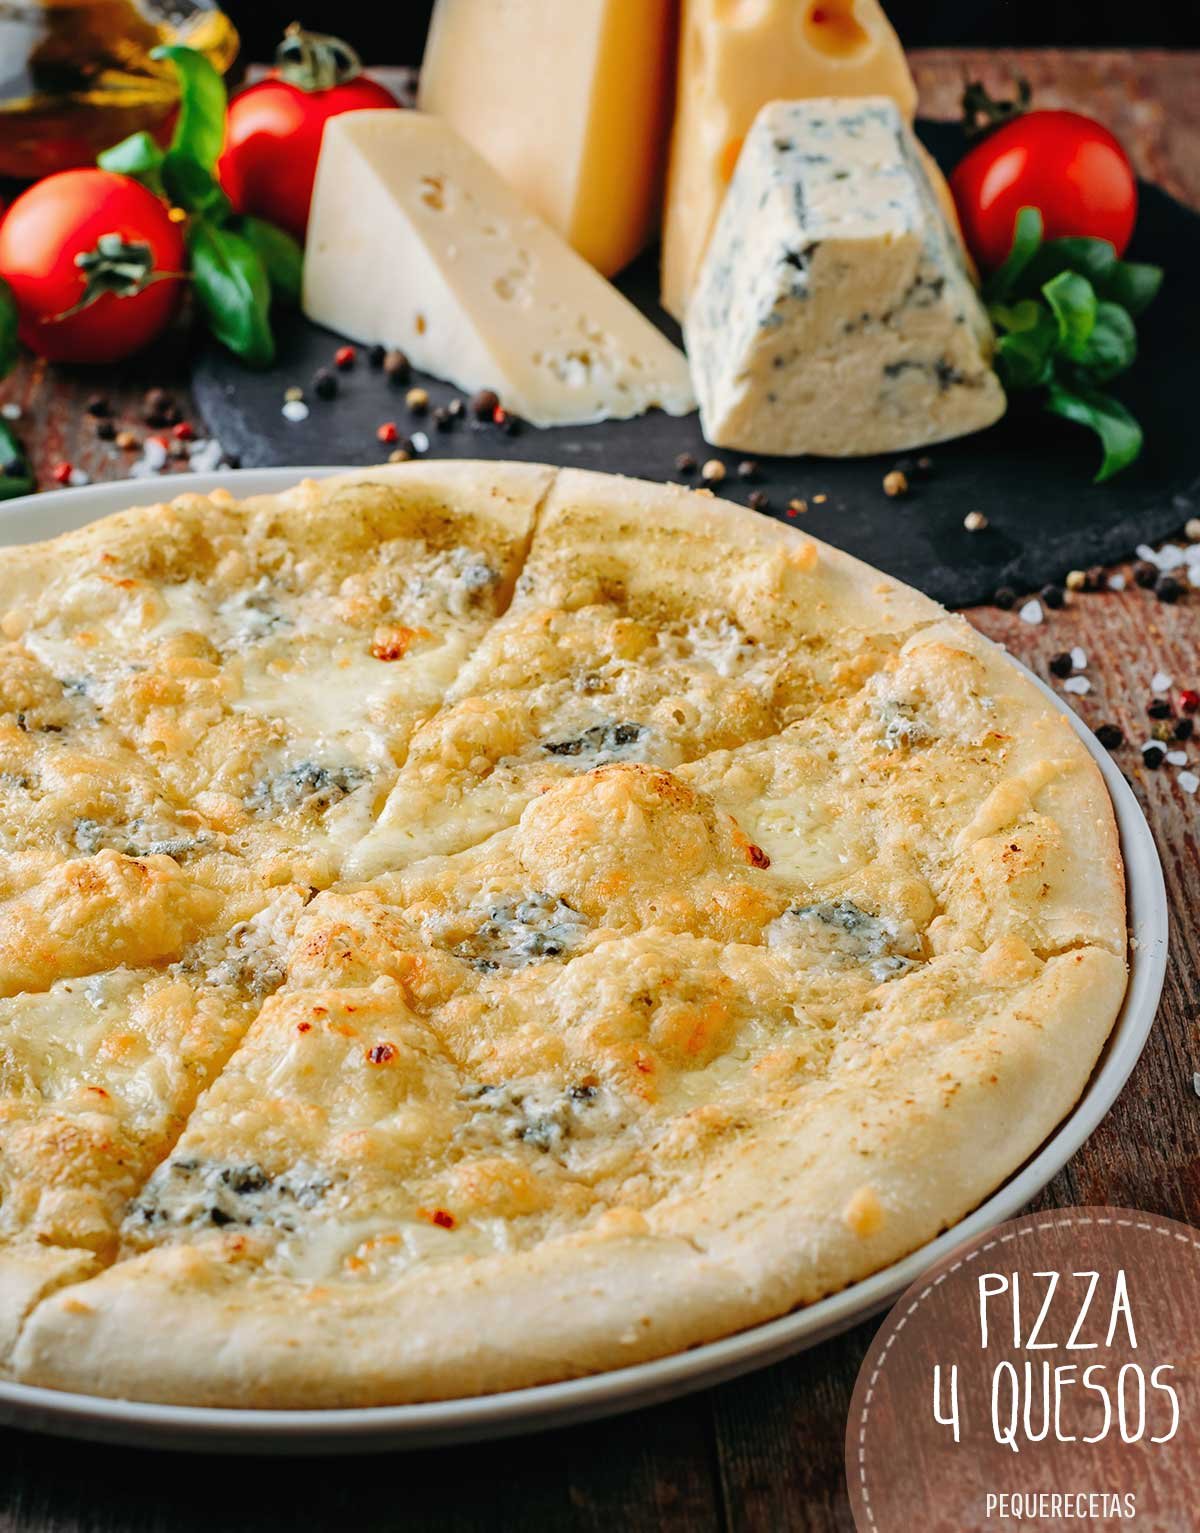 пицца четыре сыра рецепт в домашних условиях в духовке пошаговый фото 91